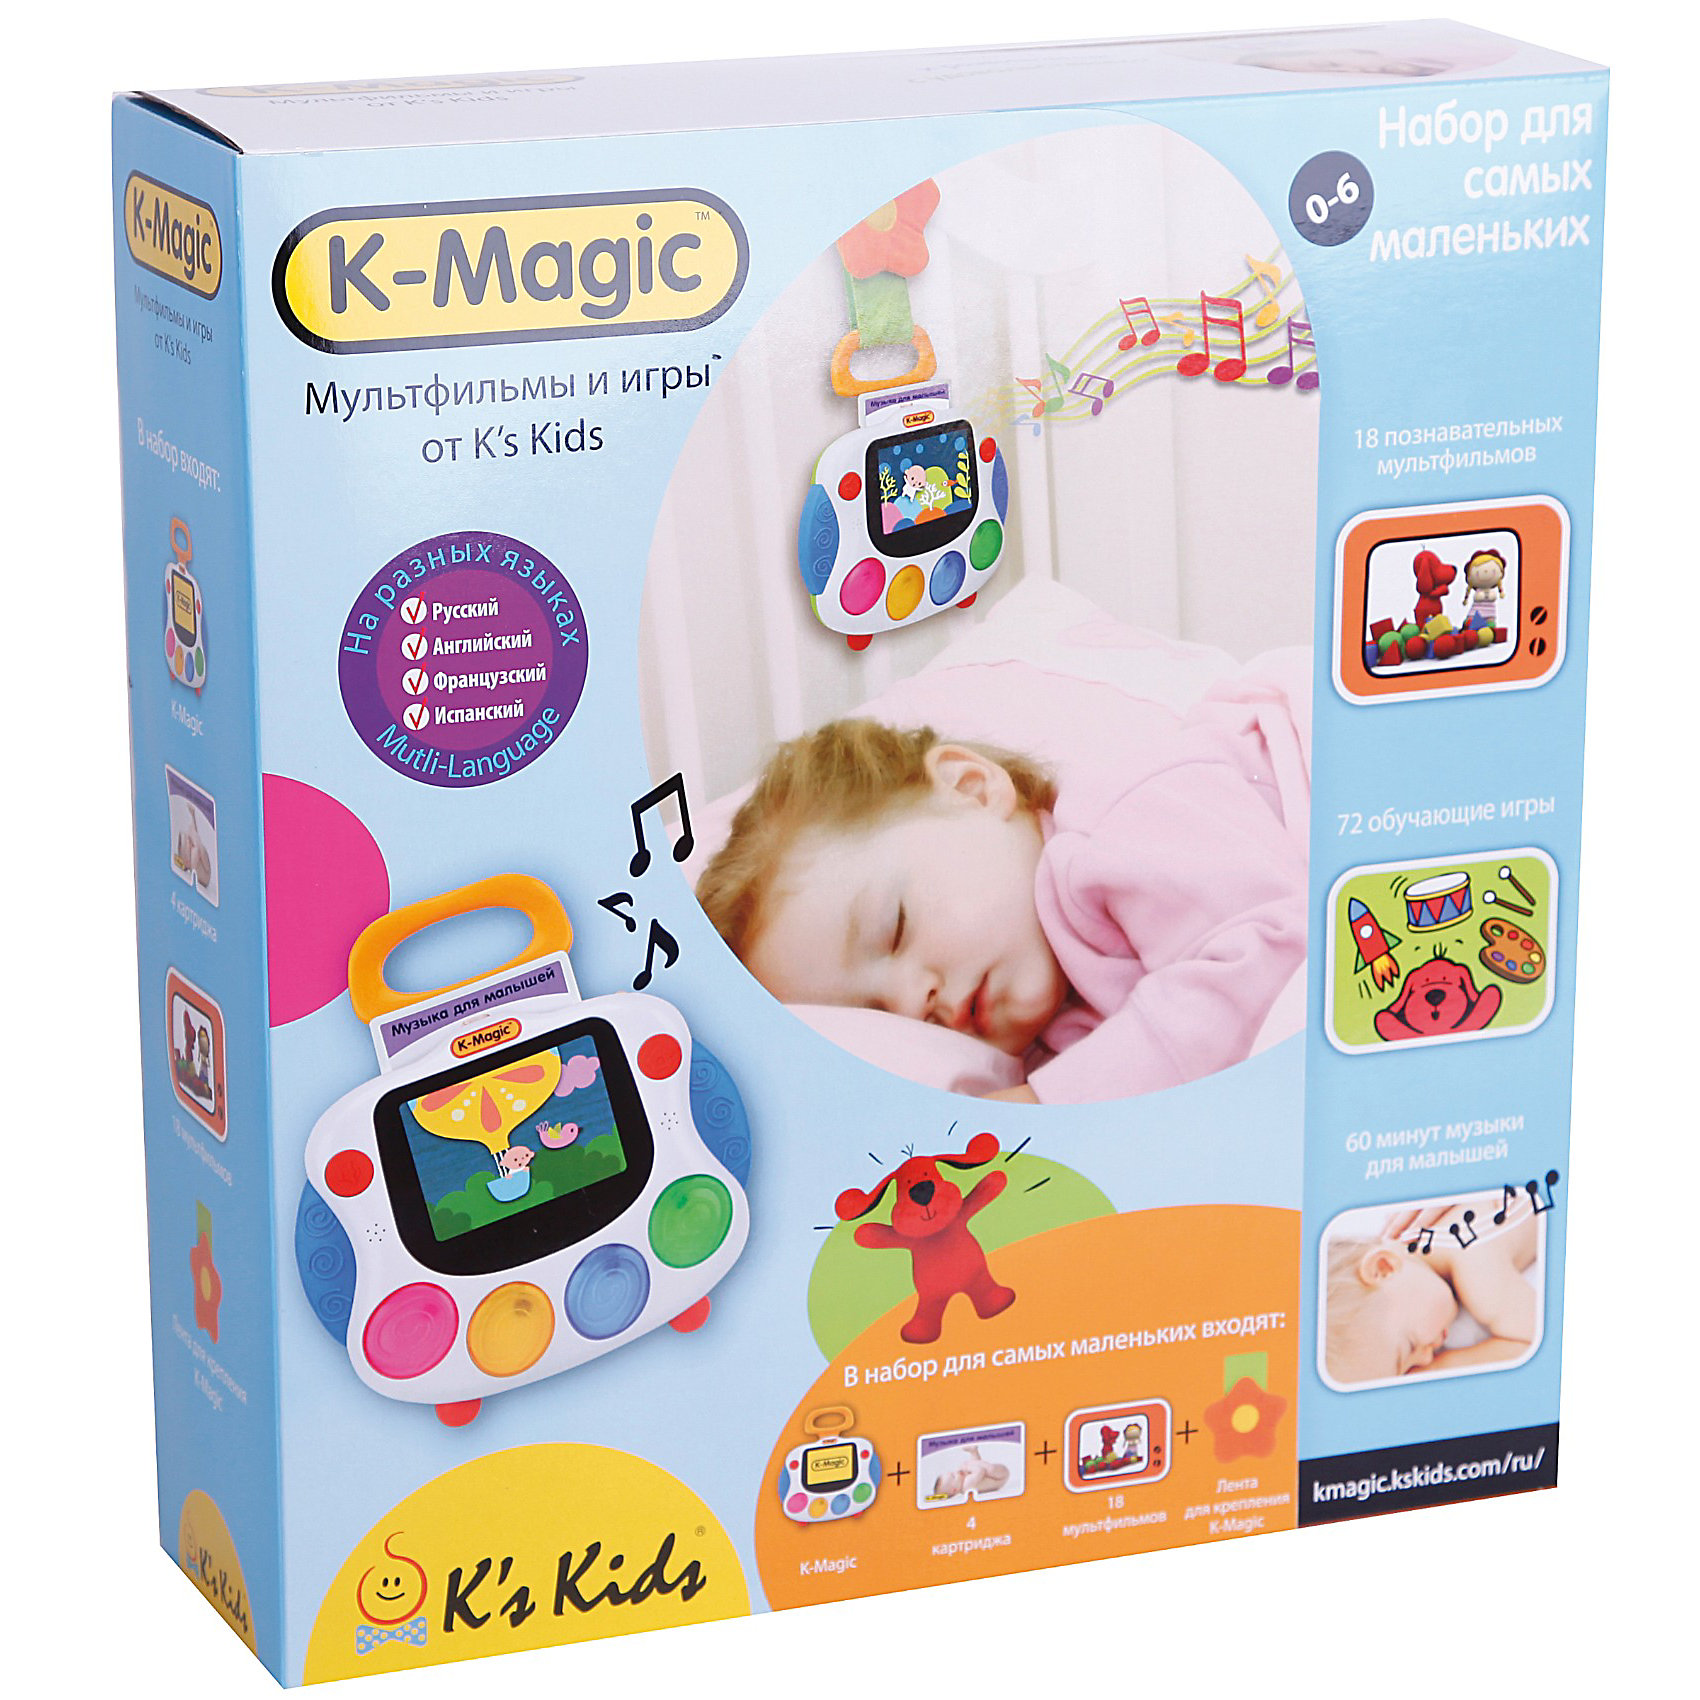 K magic. Детский планшет k's Kids. Игрушка k-Magic. Игровая интерактивная консоль k-Magic Standard. K’Magic k’s Kids.